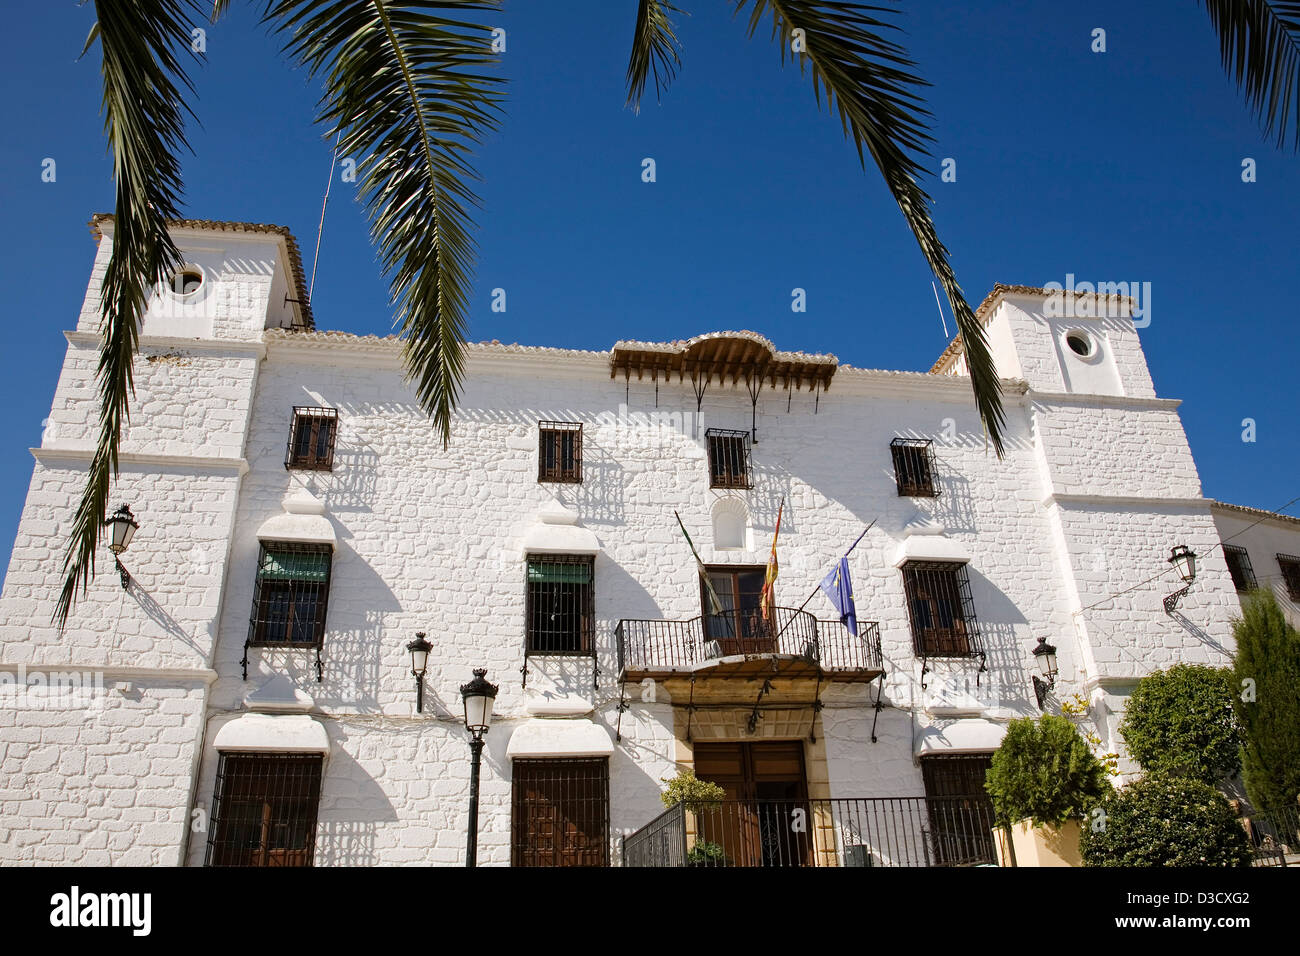 L'Hôtel de ville Maison de village Grenade Andalousie Espagne Montefrío Banque D'Images